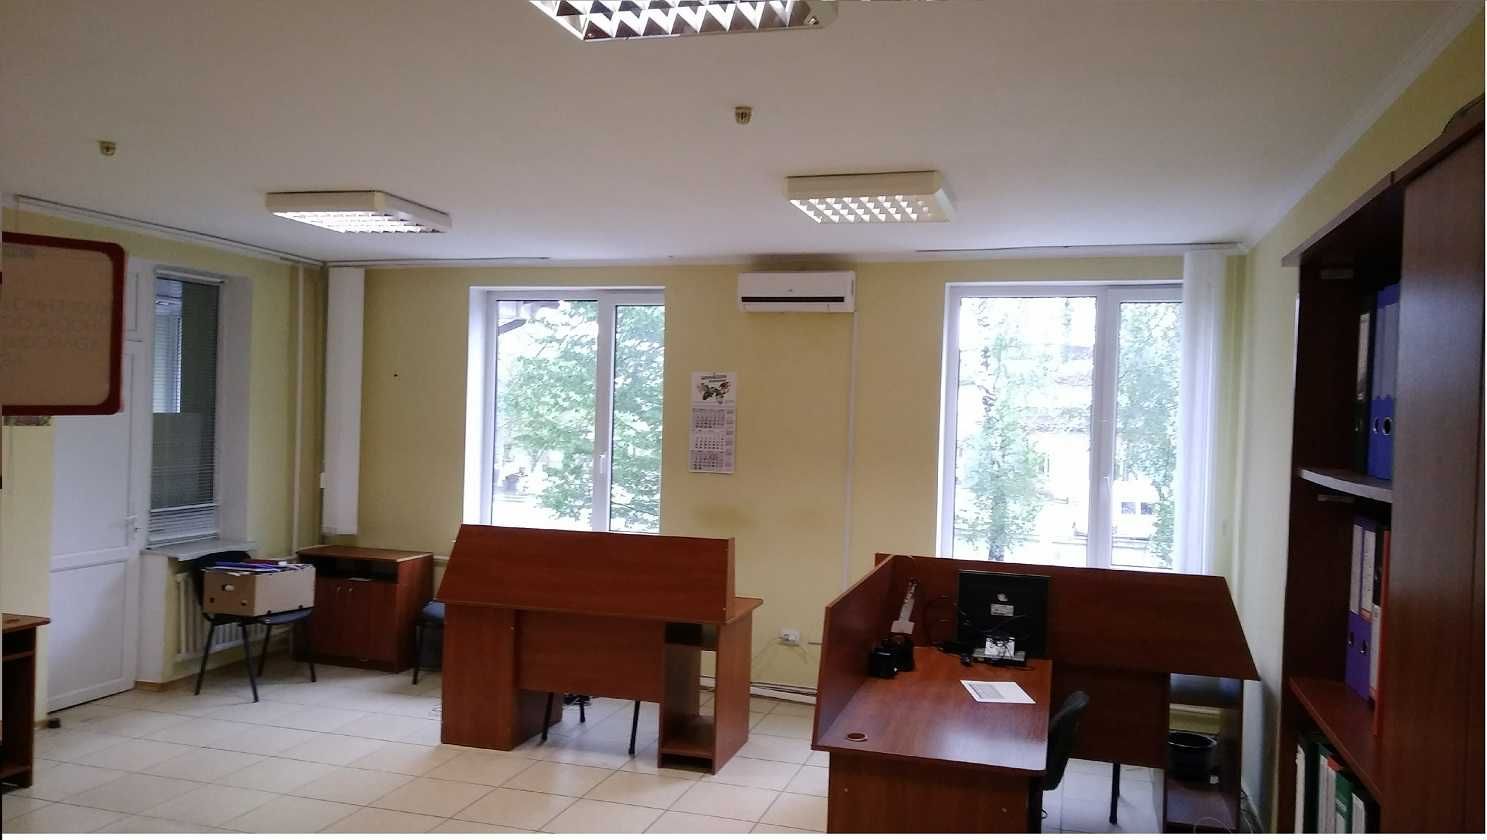 Продаж офісного приміщення м. Луцьк 270у.о/кв.м.